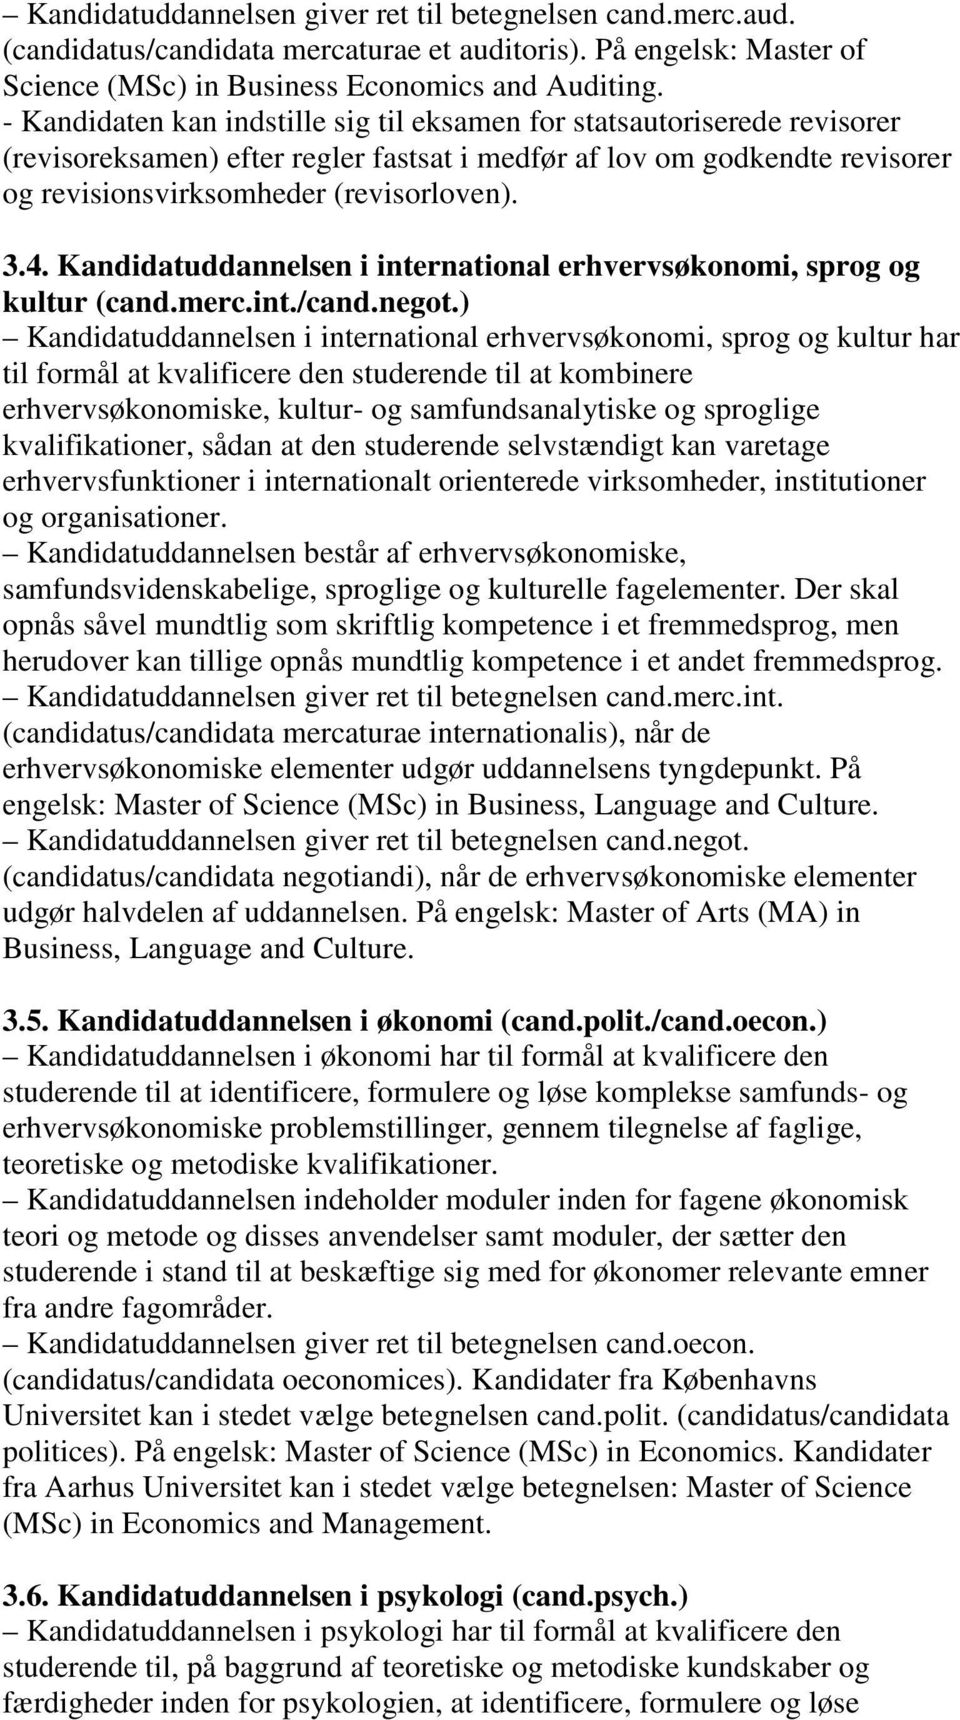 Kandidatuddannelsen i international erhvervsøkonomi, sprog og kultur (cand.merc.int./cand.negot.